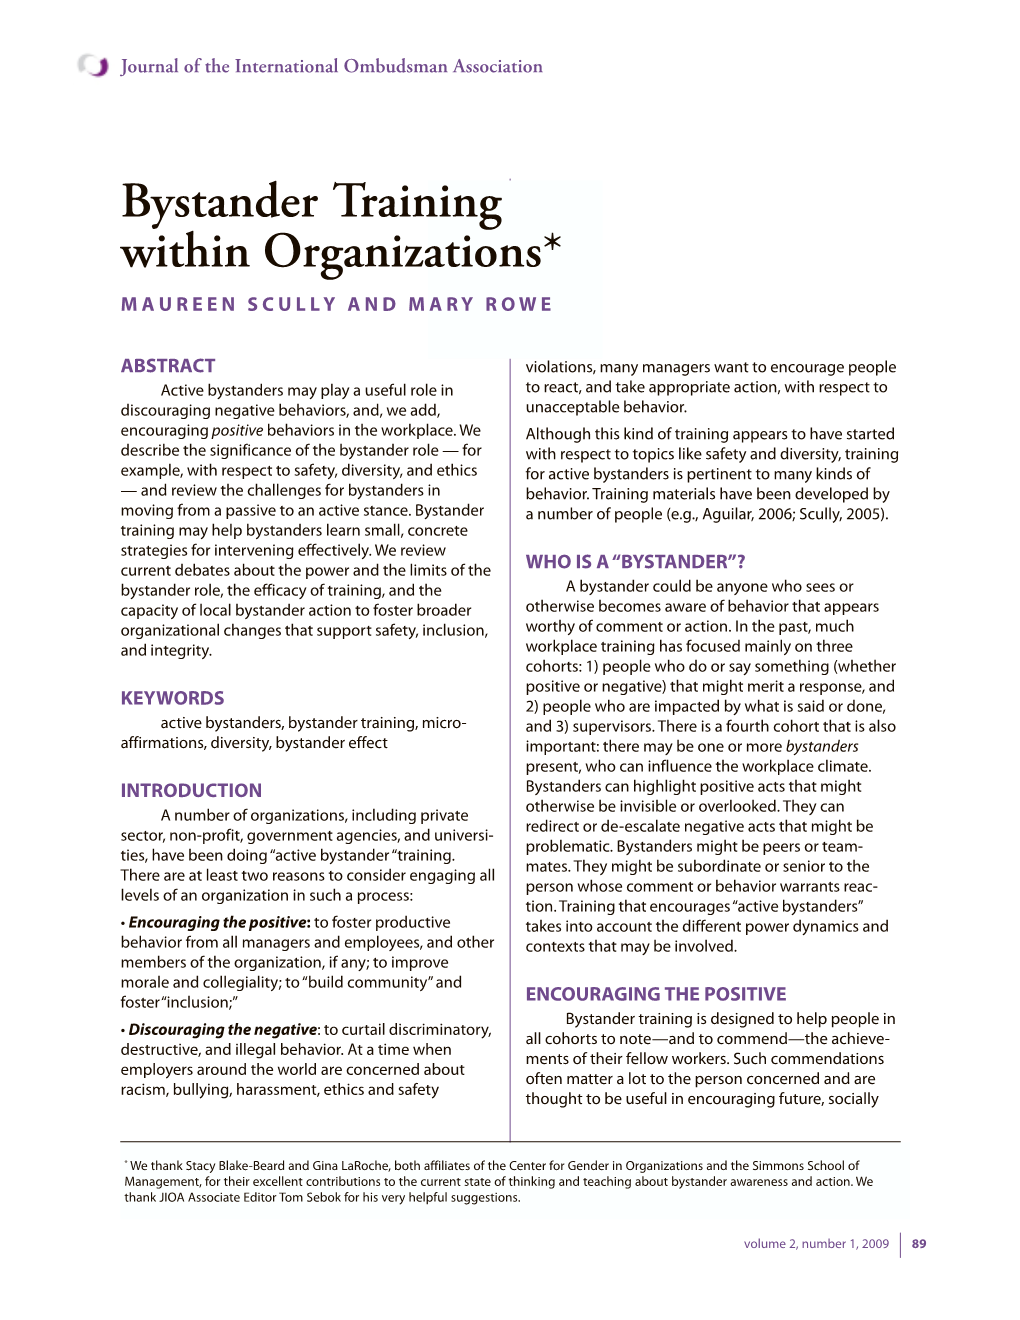 Bystander Training Within Organizations* M a U R E E N S C U L L Y a N D M a R Y R O W E